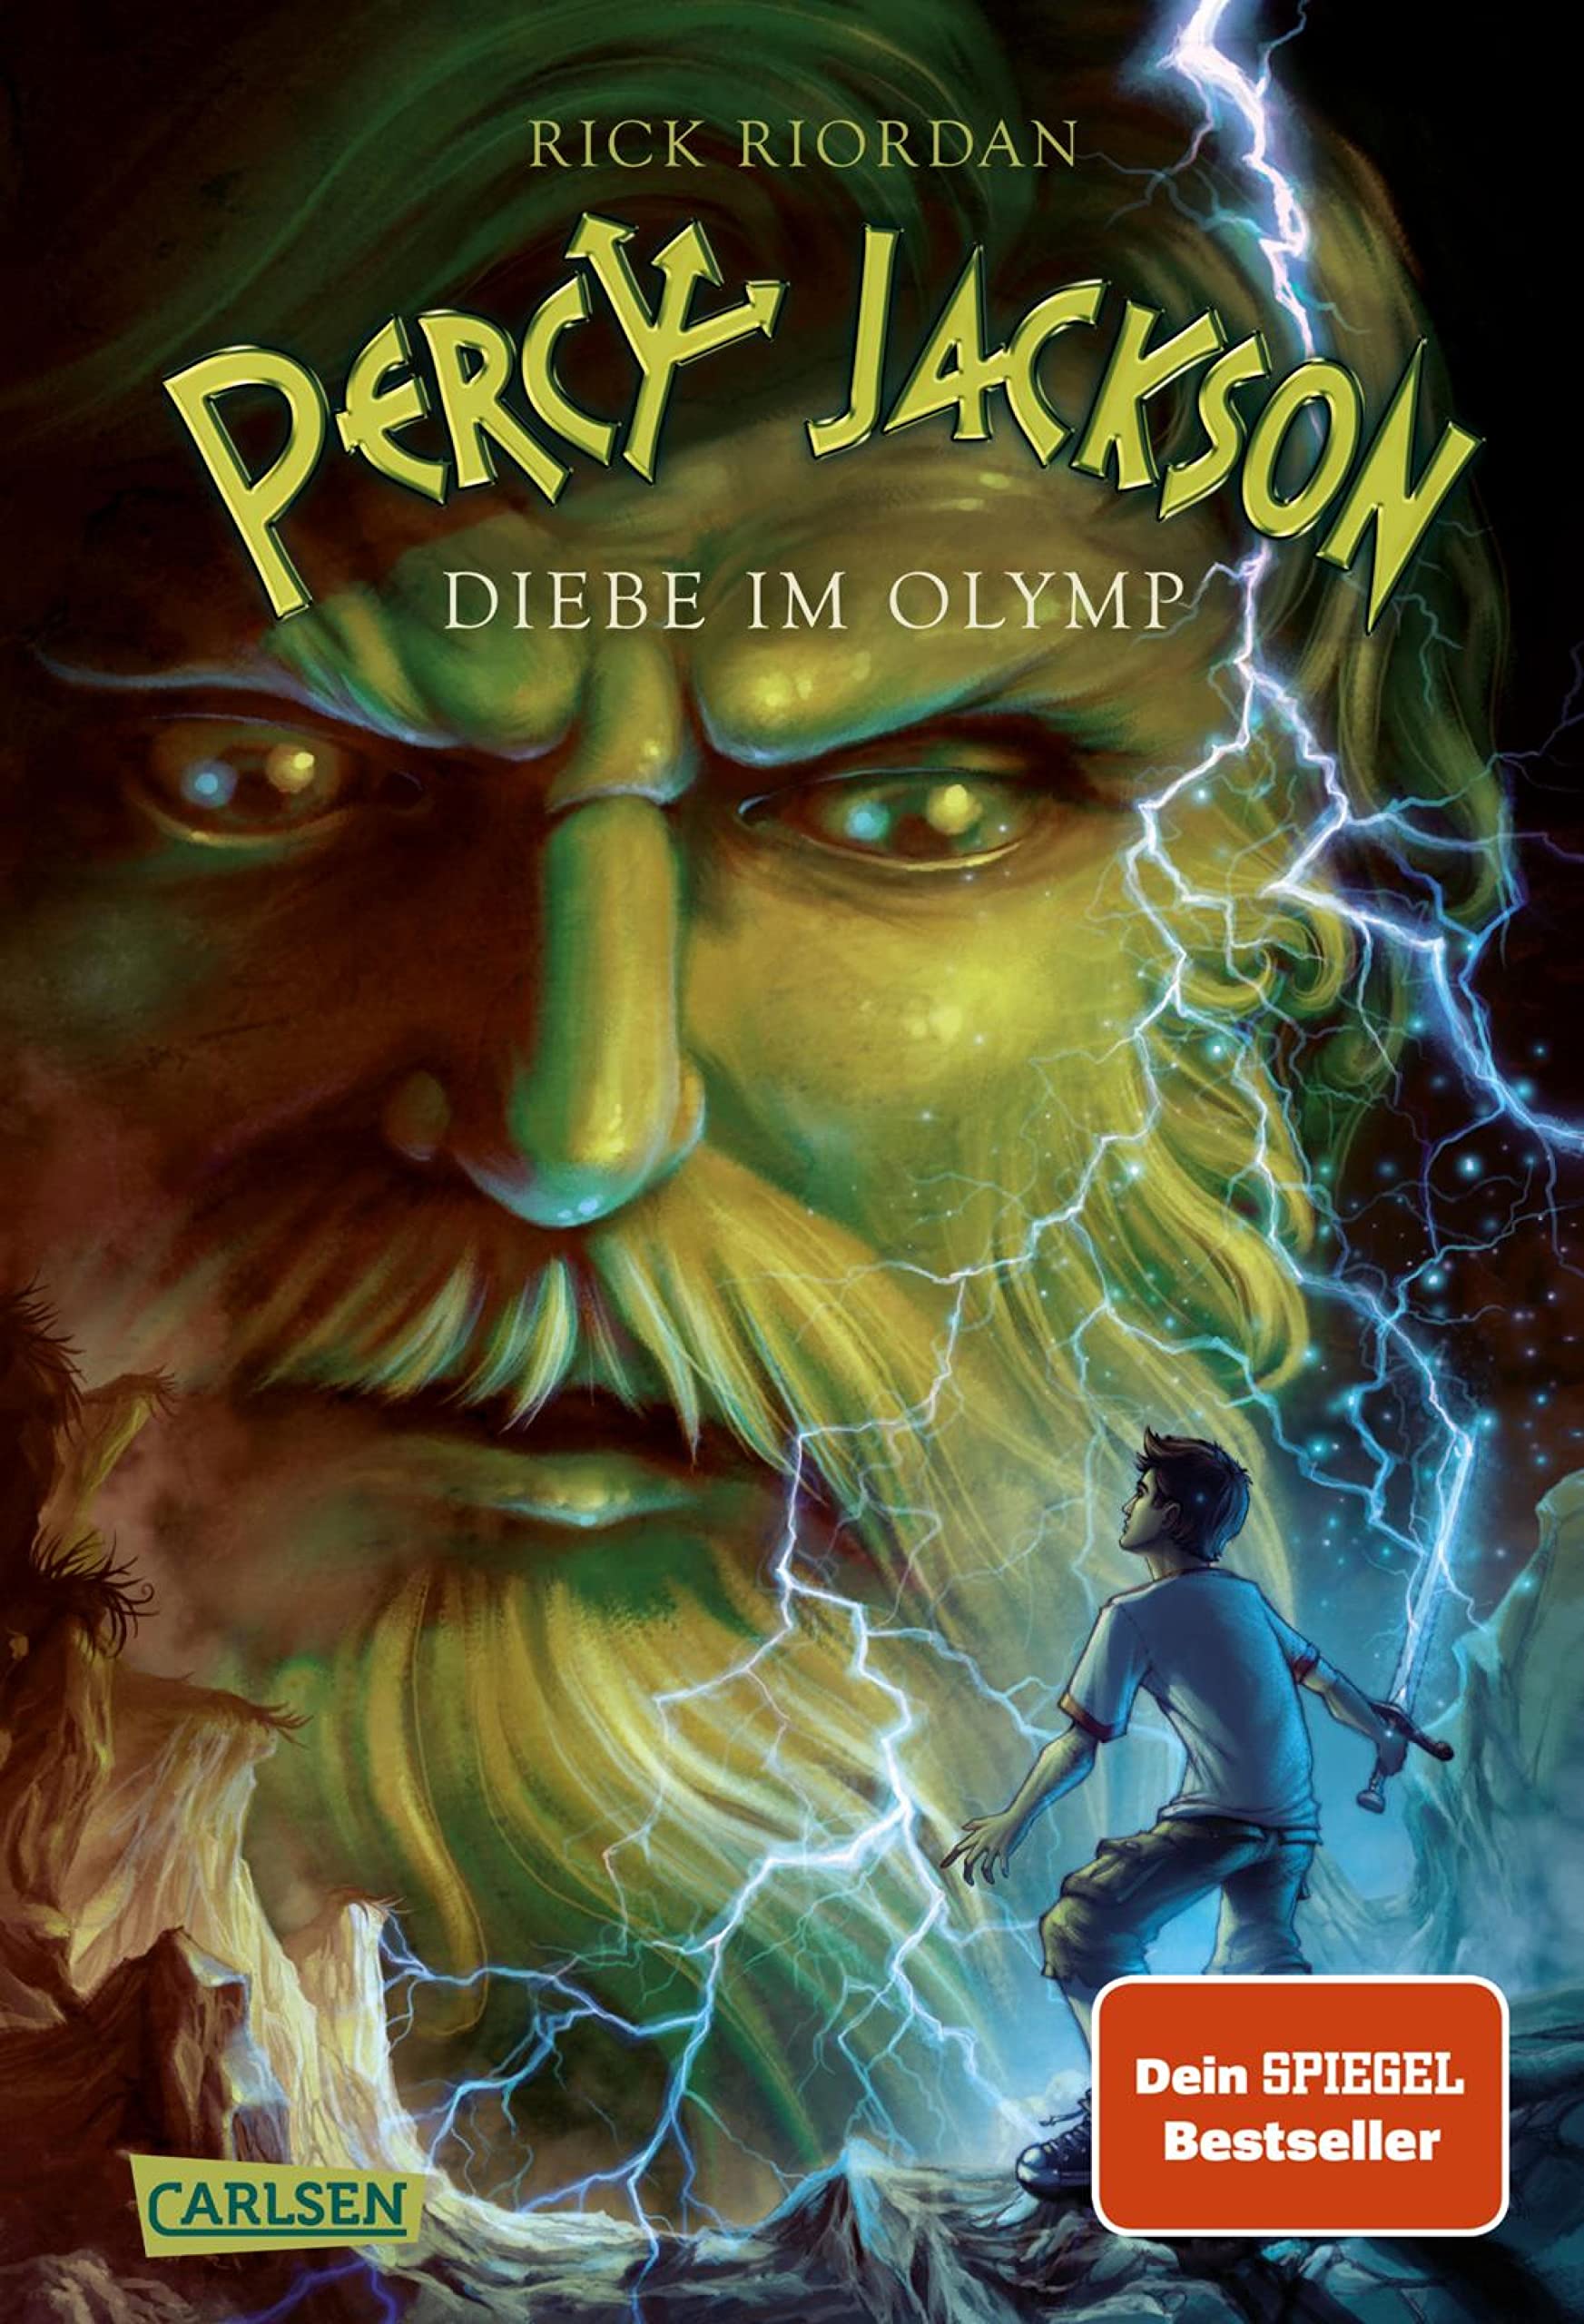 Percy Jackson - Diebe im Olymp (Percy Jackson 1): Der erste Band der Bestsellerserie! (German Edition)